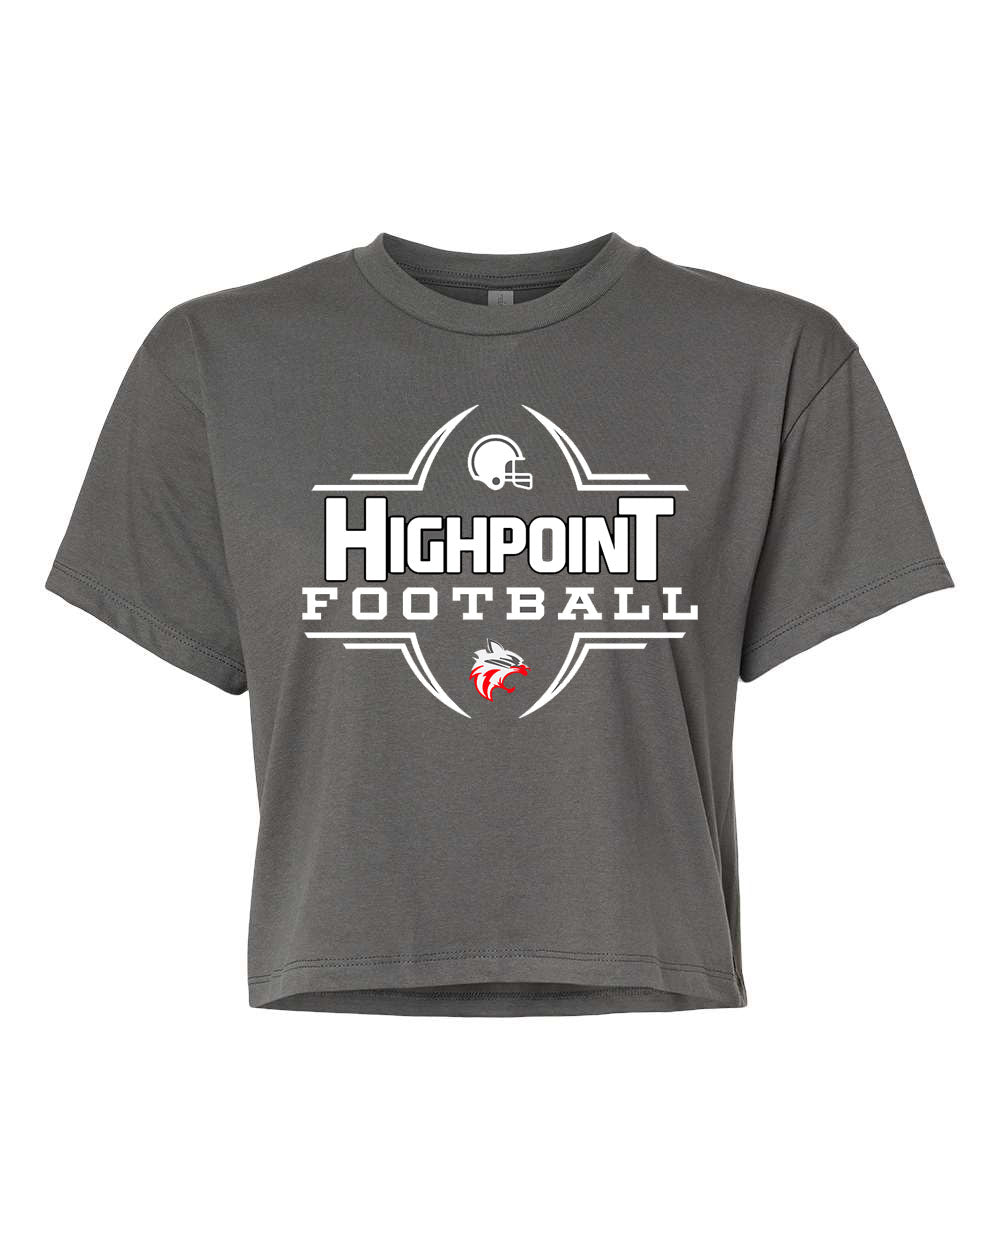 High point Football design 6 Crop Top